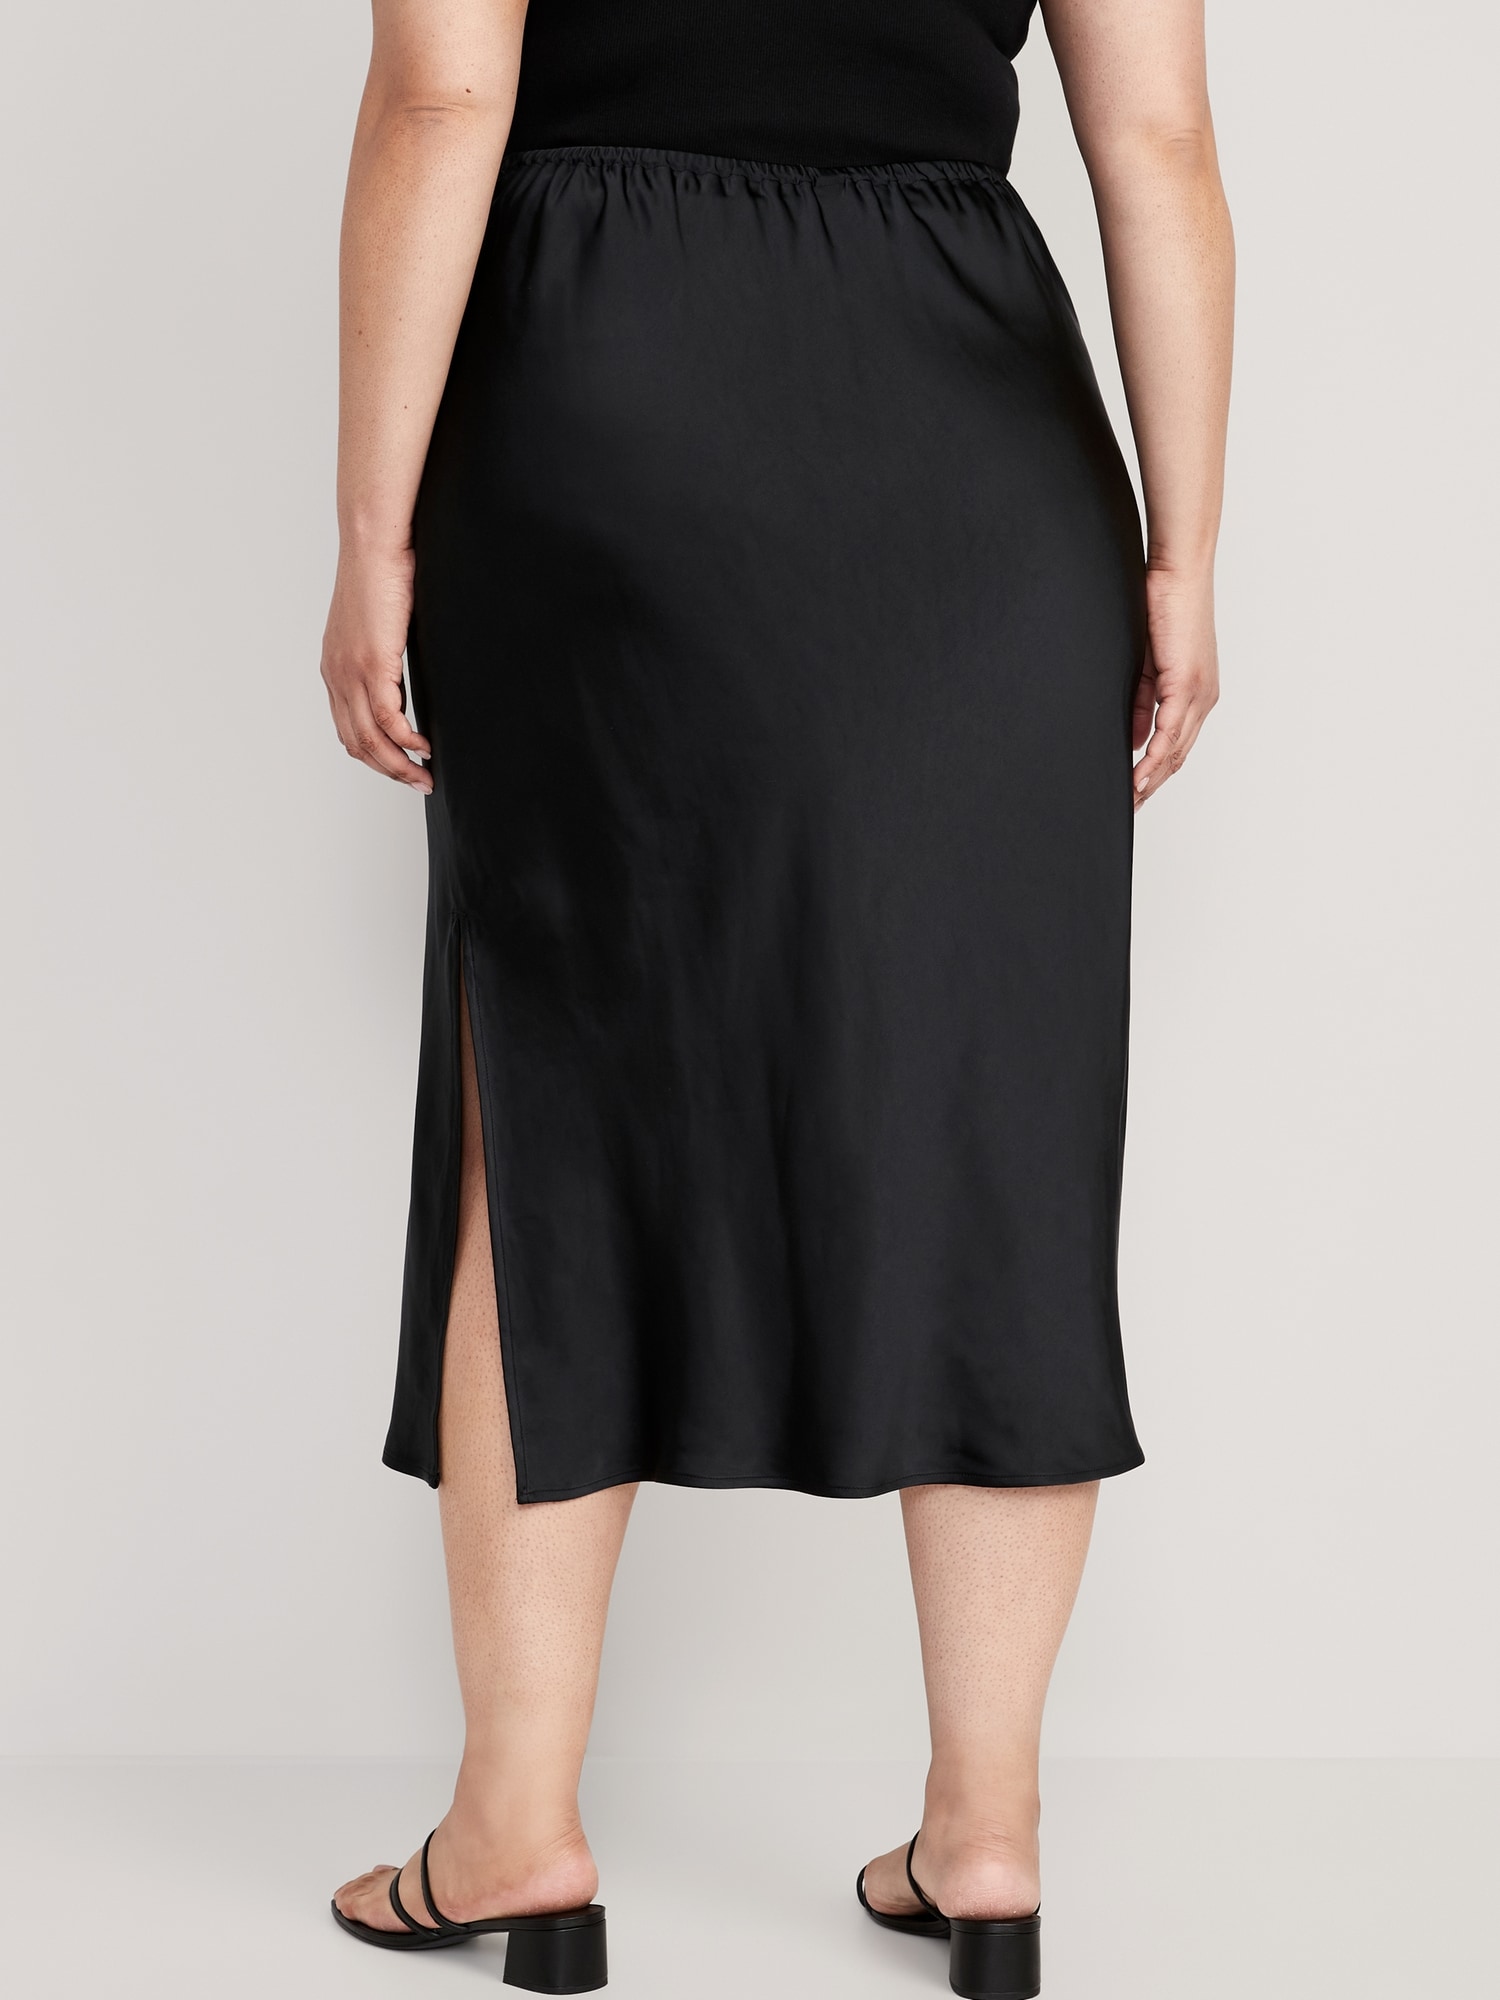 Silk Skirt Black Silk Satin Skirt Bias Cut Silk Slip Skirt Midi